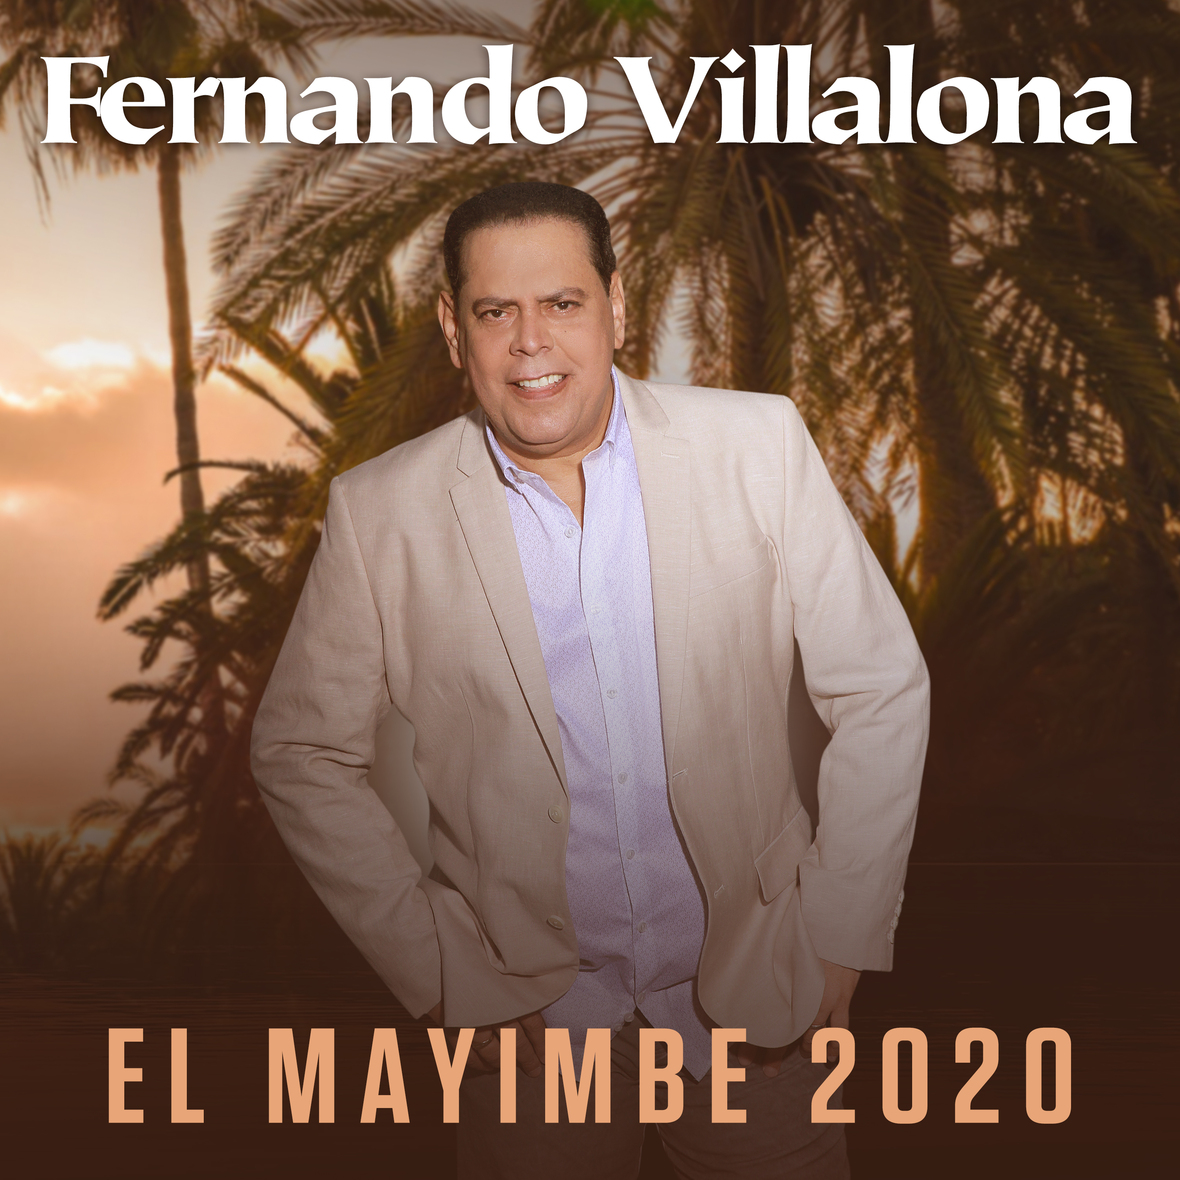 Fernando Villanona 2020